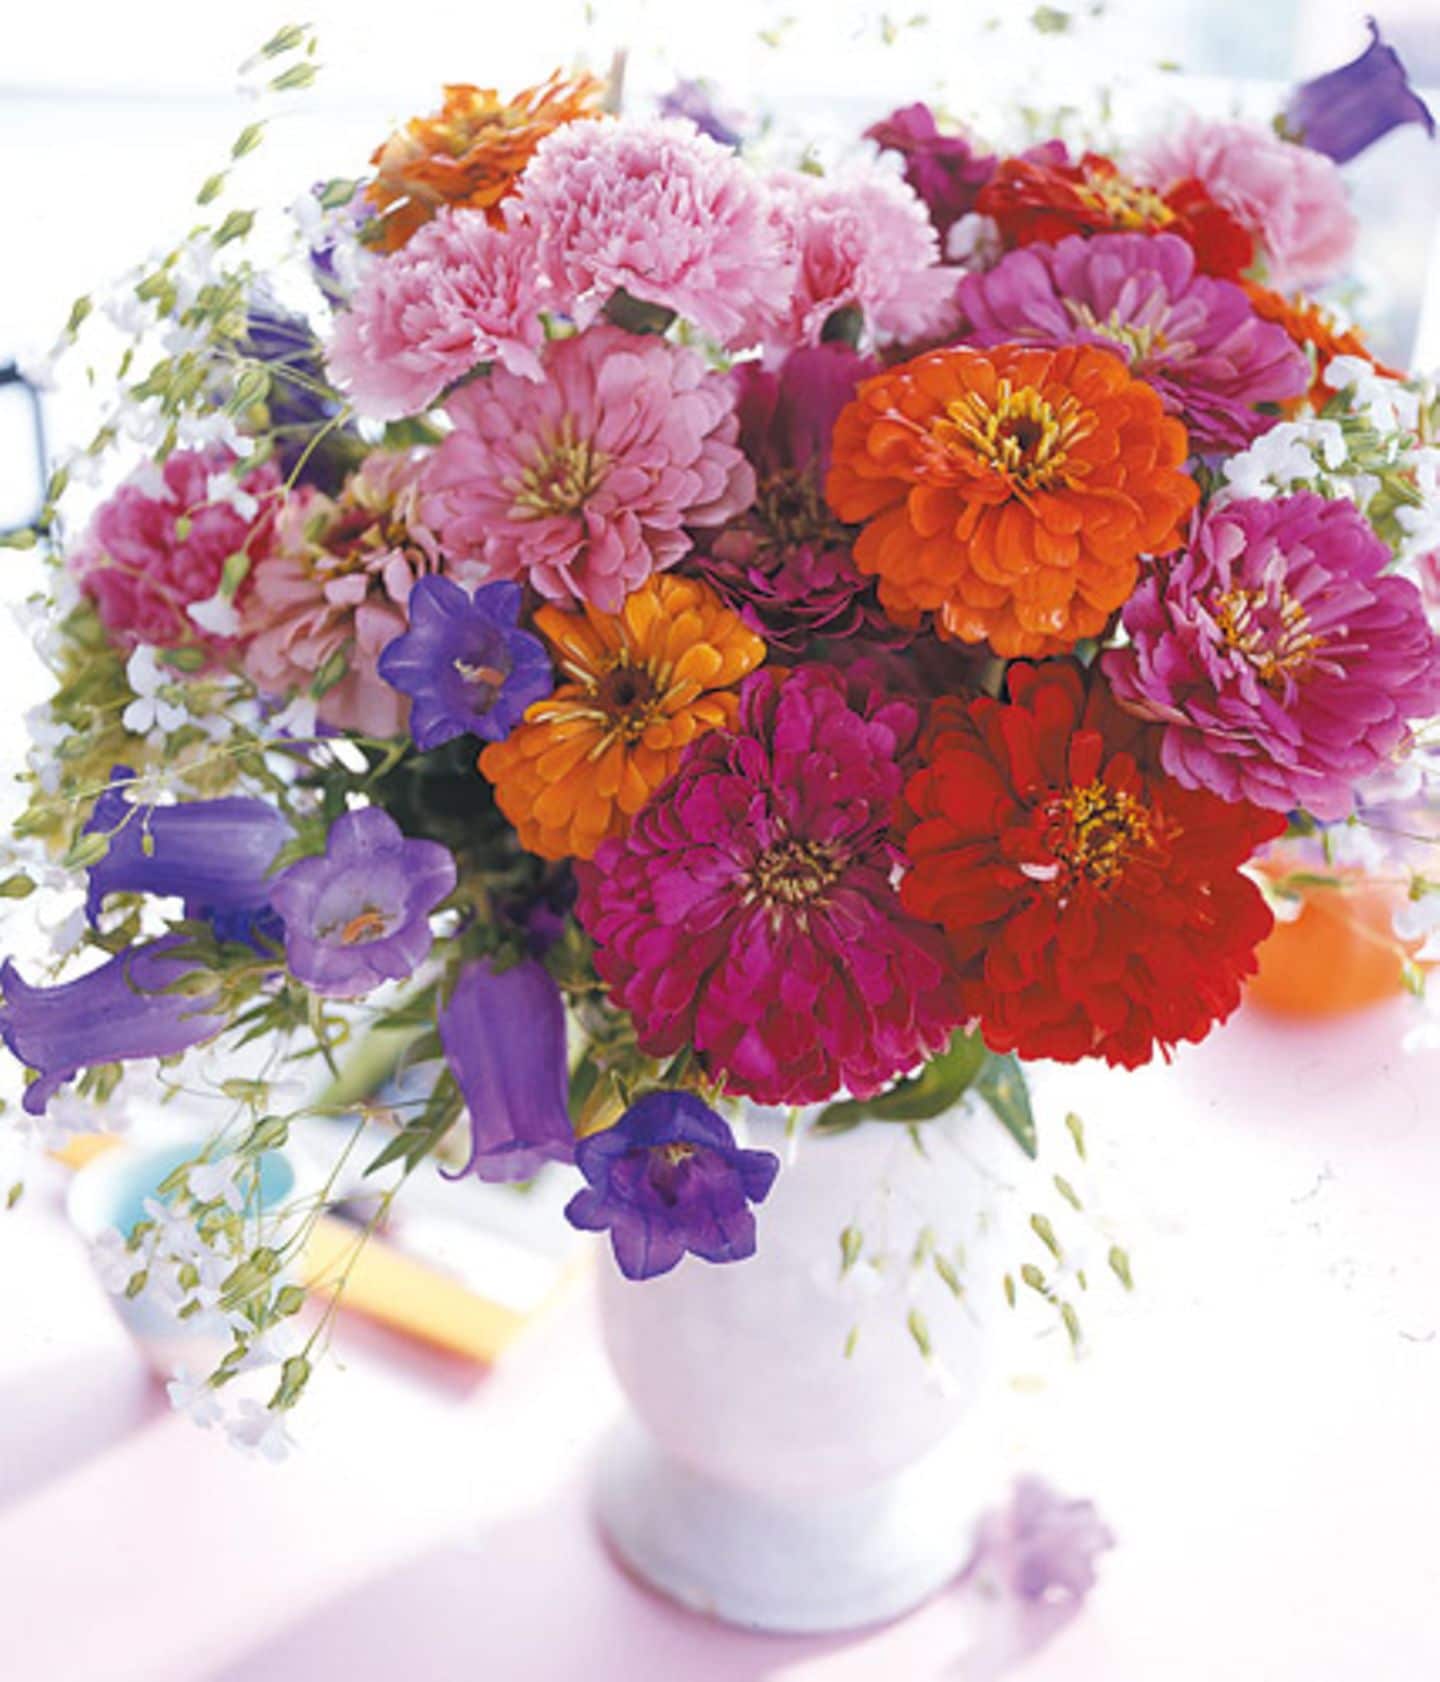 Herbst: Blumenstrauß aus Zinnien, Glockenblumen und Seifenkraut - Bild 10